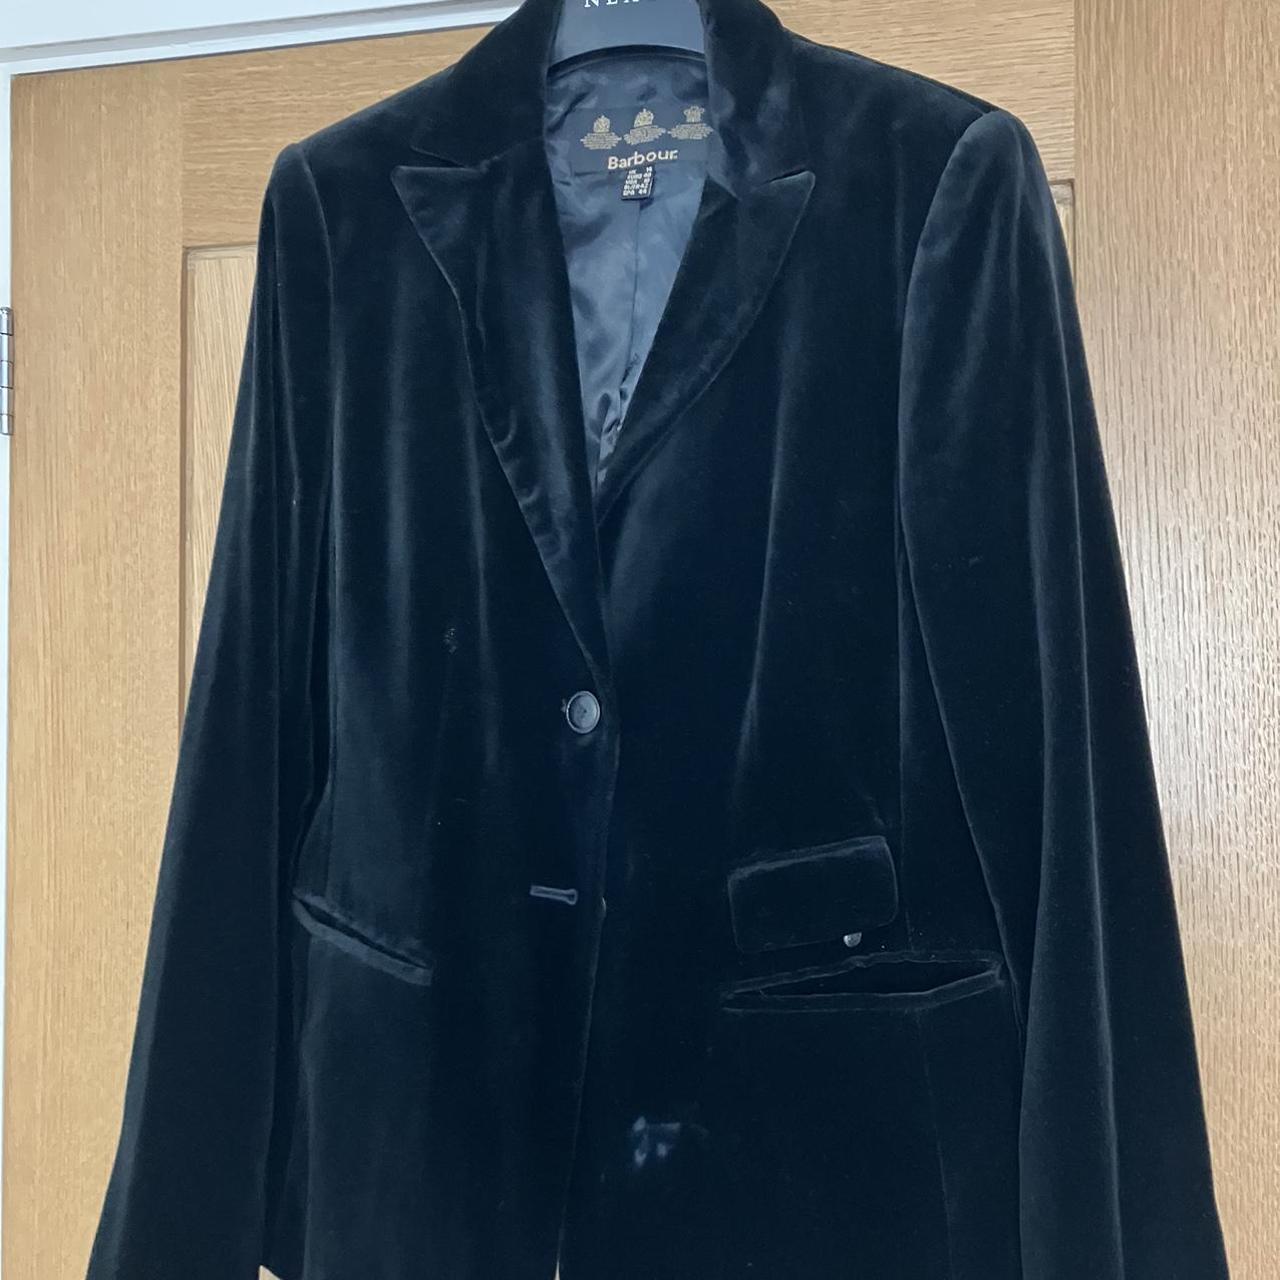 Vintage Barbour black velvet jacket. Think 1970s?... - Depop